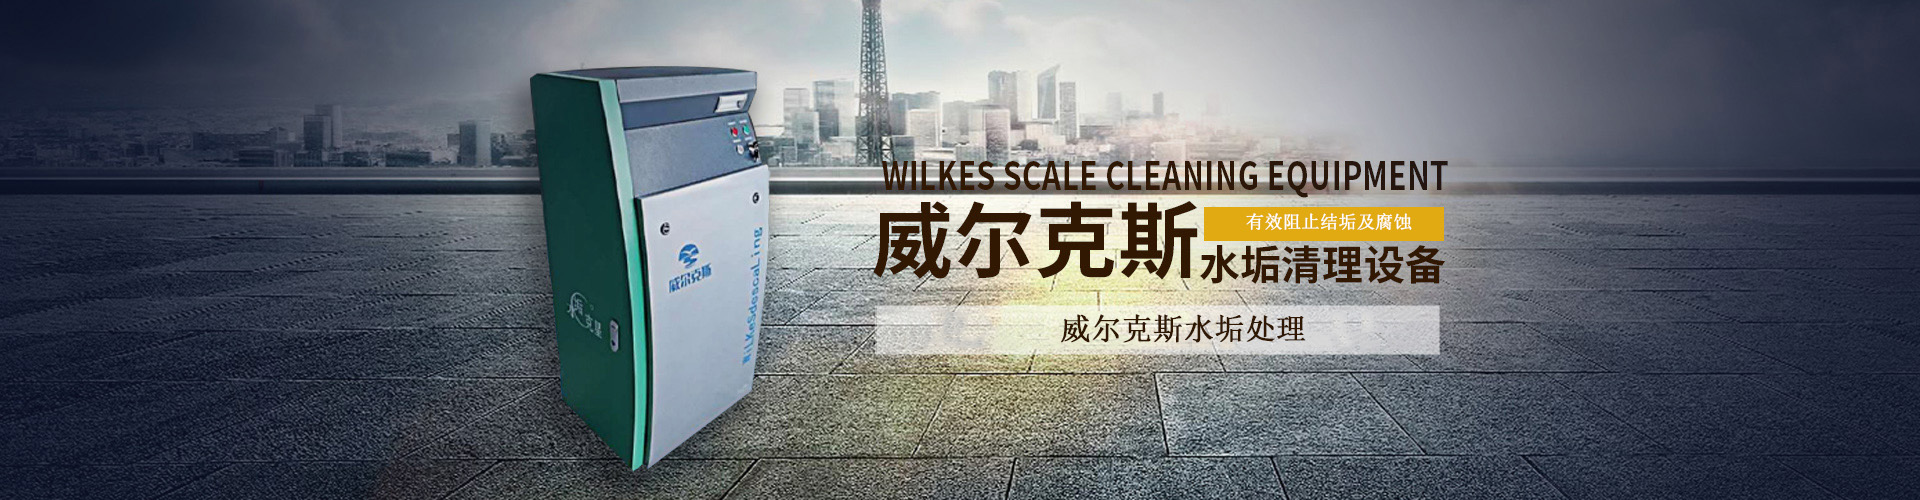 贵州威尔克斯水垢处理设备批发有限公司